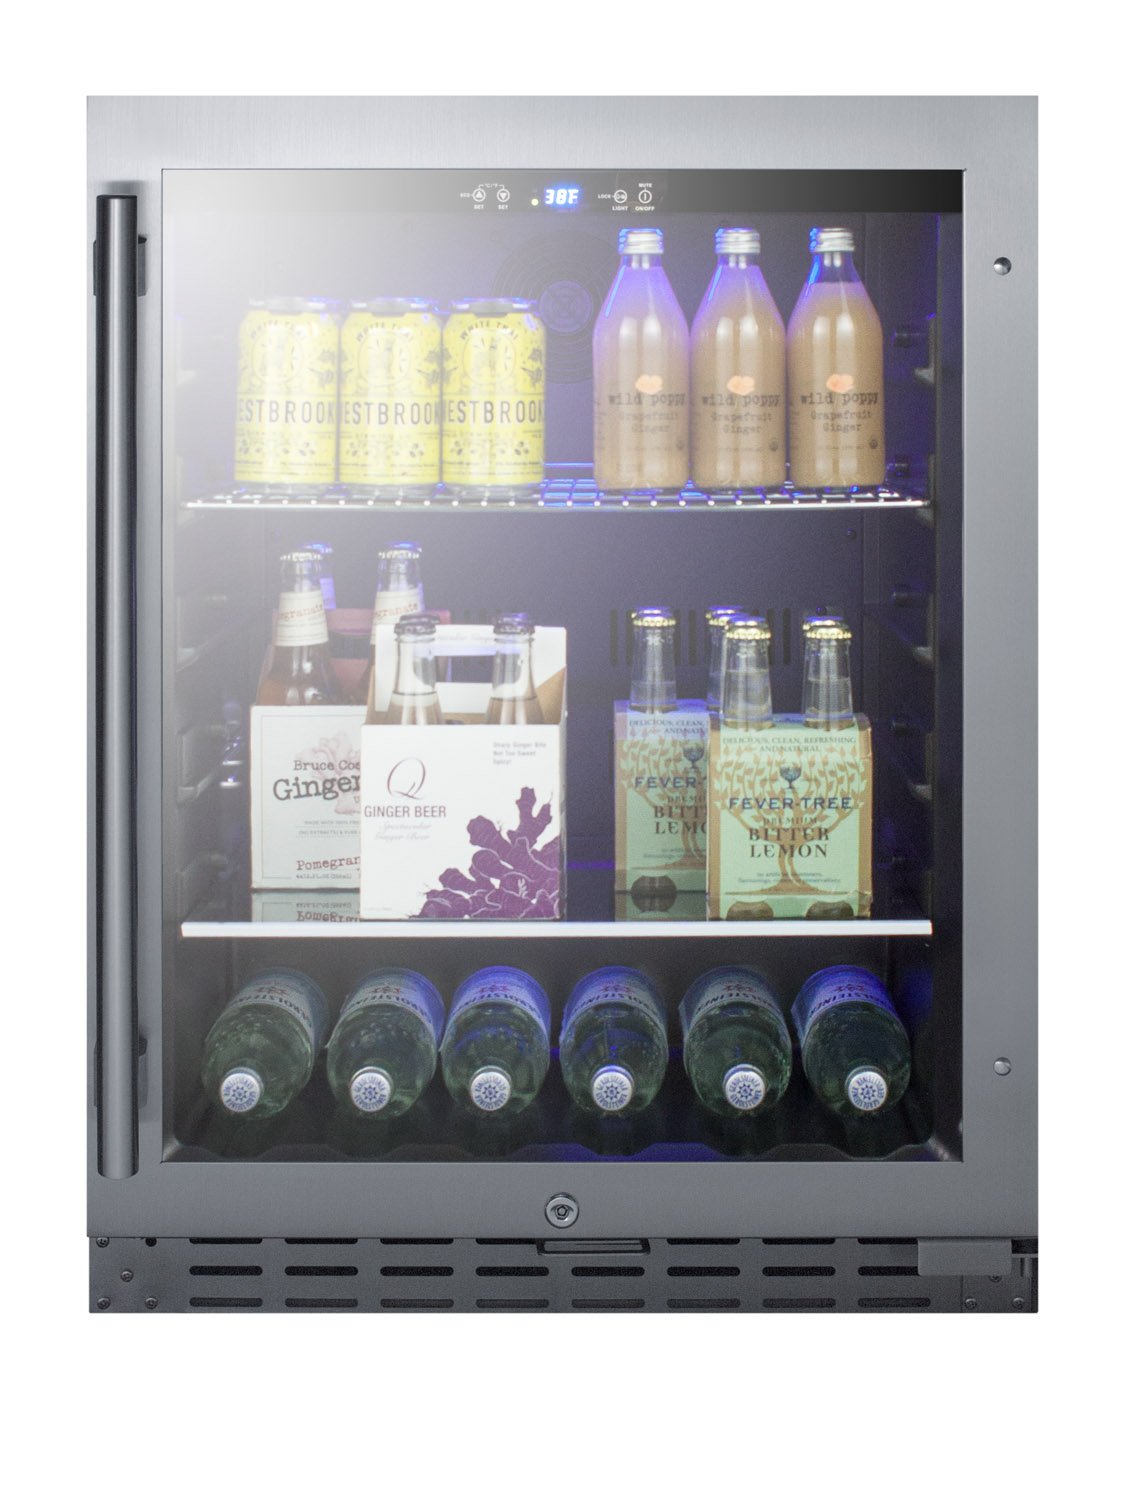 SUMMIT 24" Wide Built-In Beverage Cooler, ADA Compliant